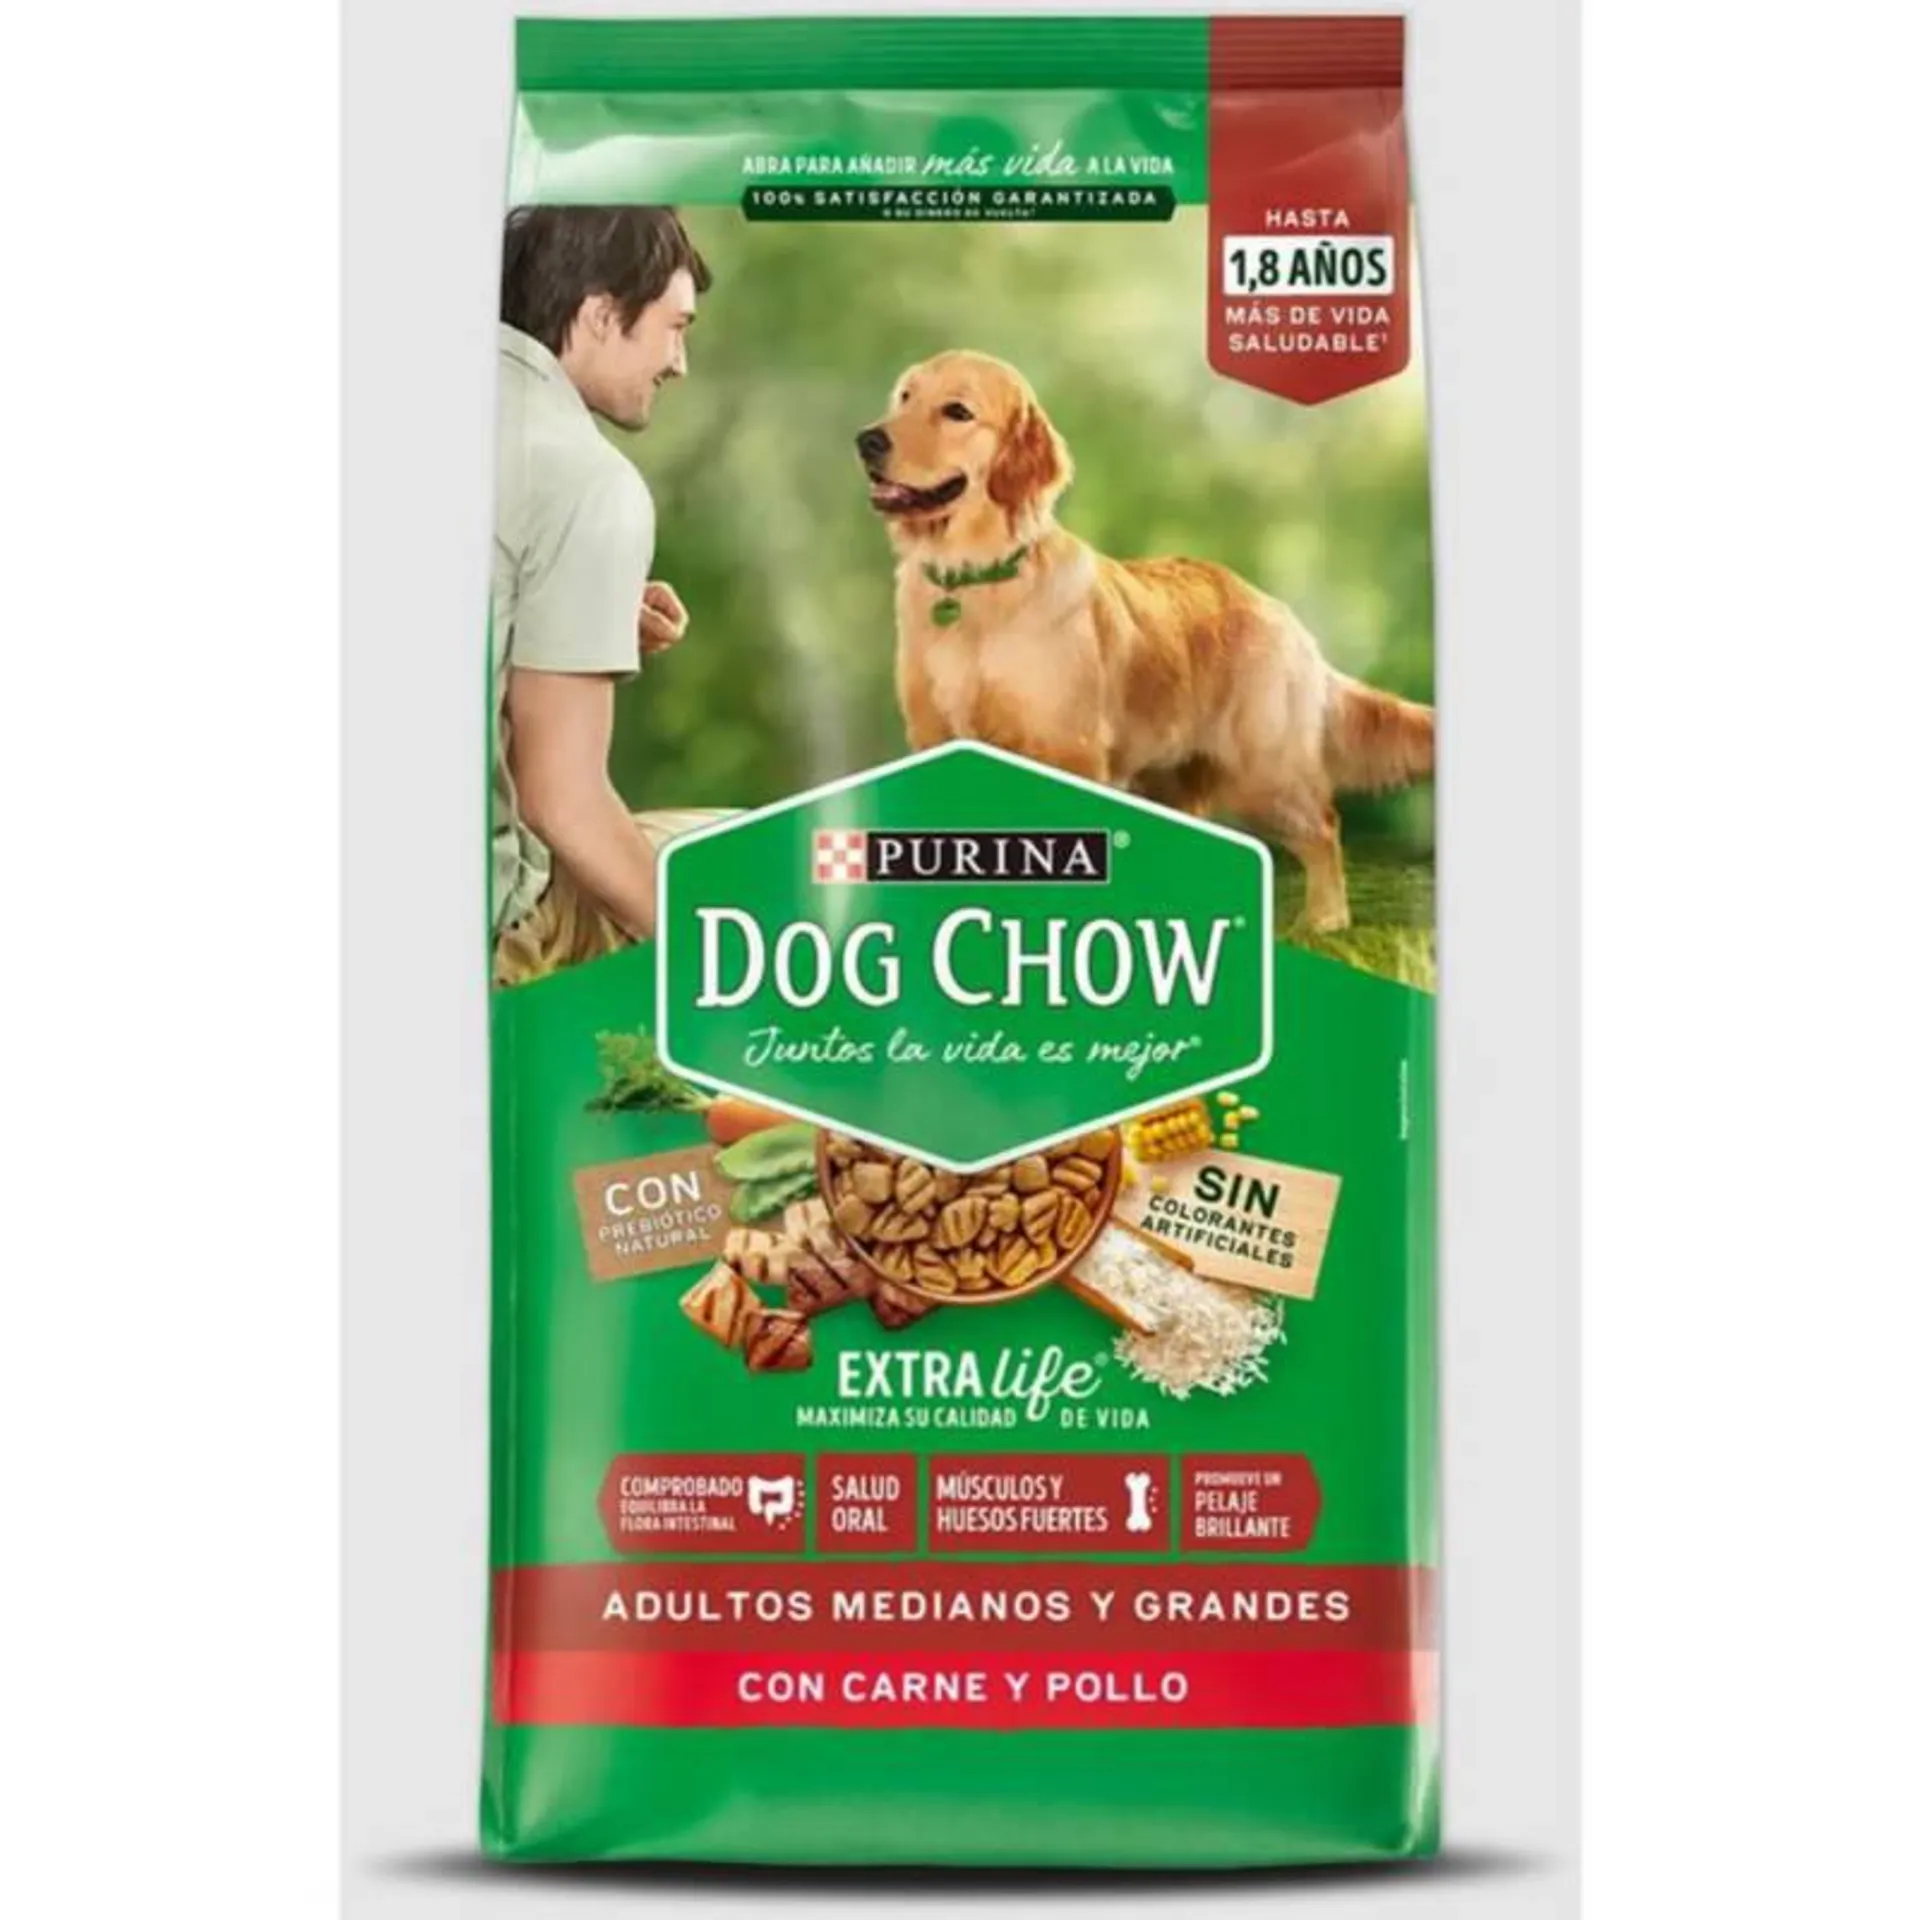 Dog Chow Salud Visible Perros Adultos Medianos Y Grandes 17Kg